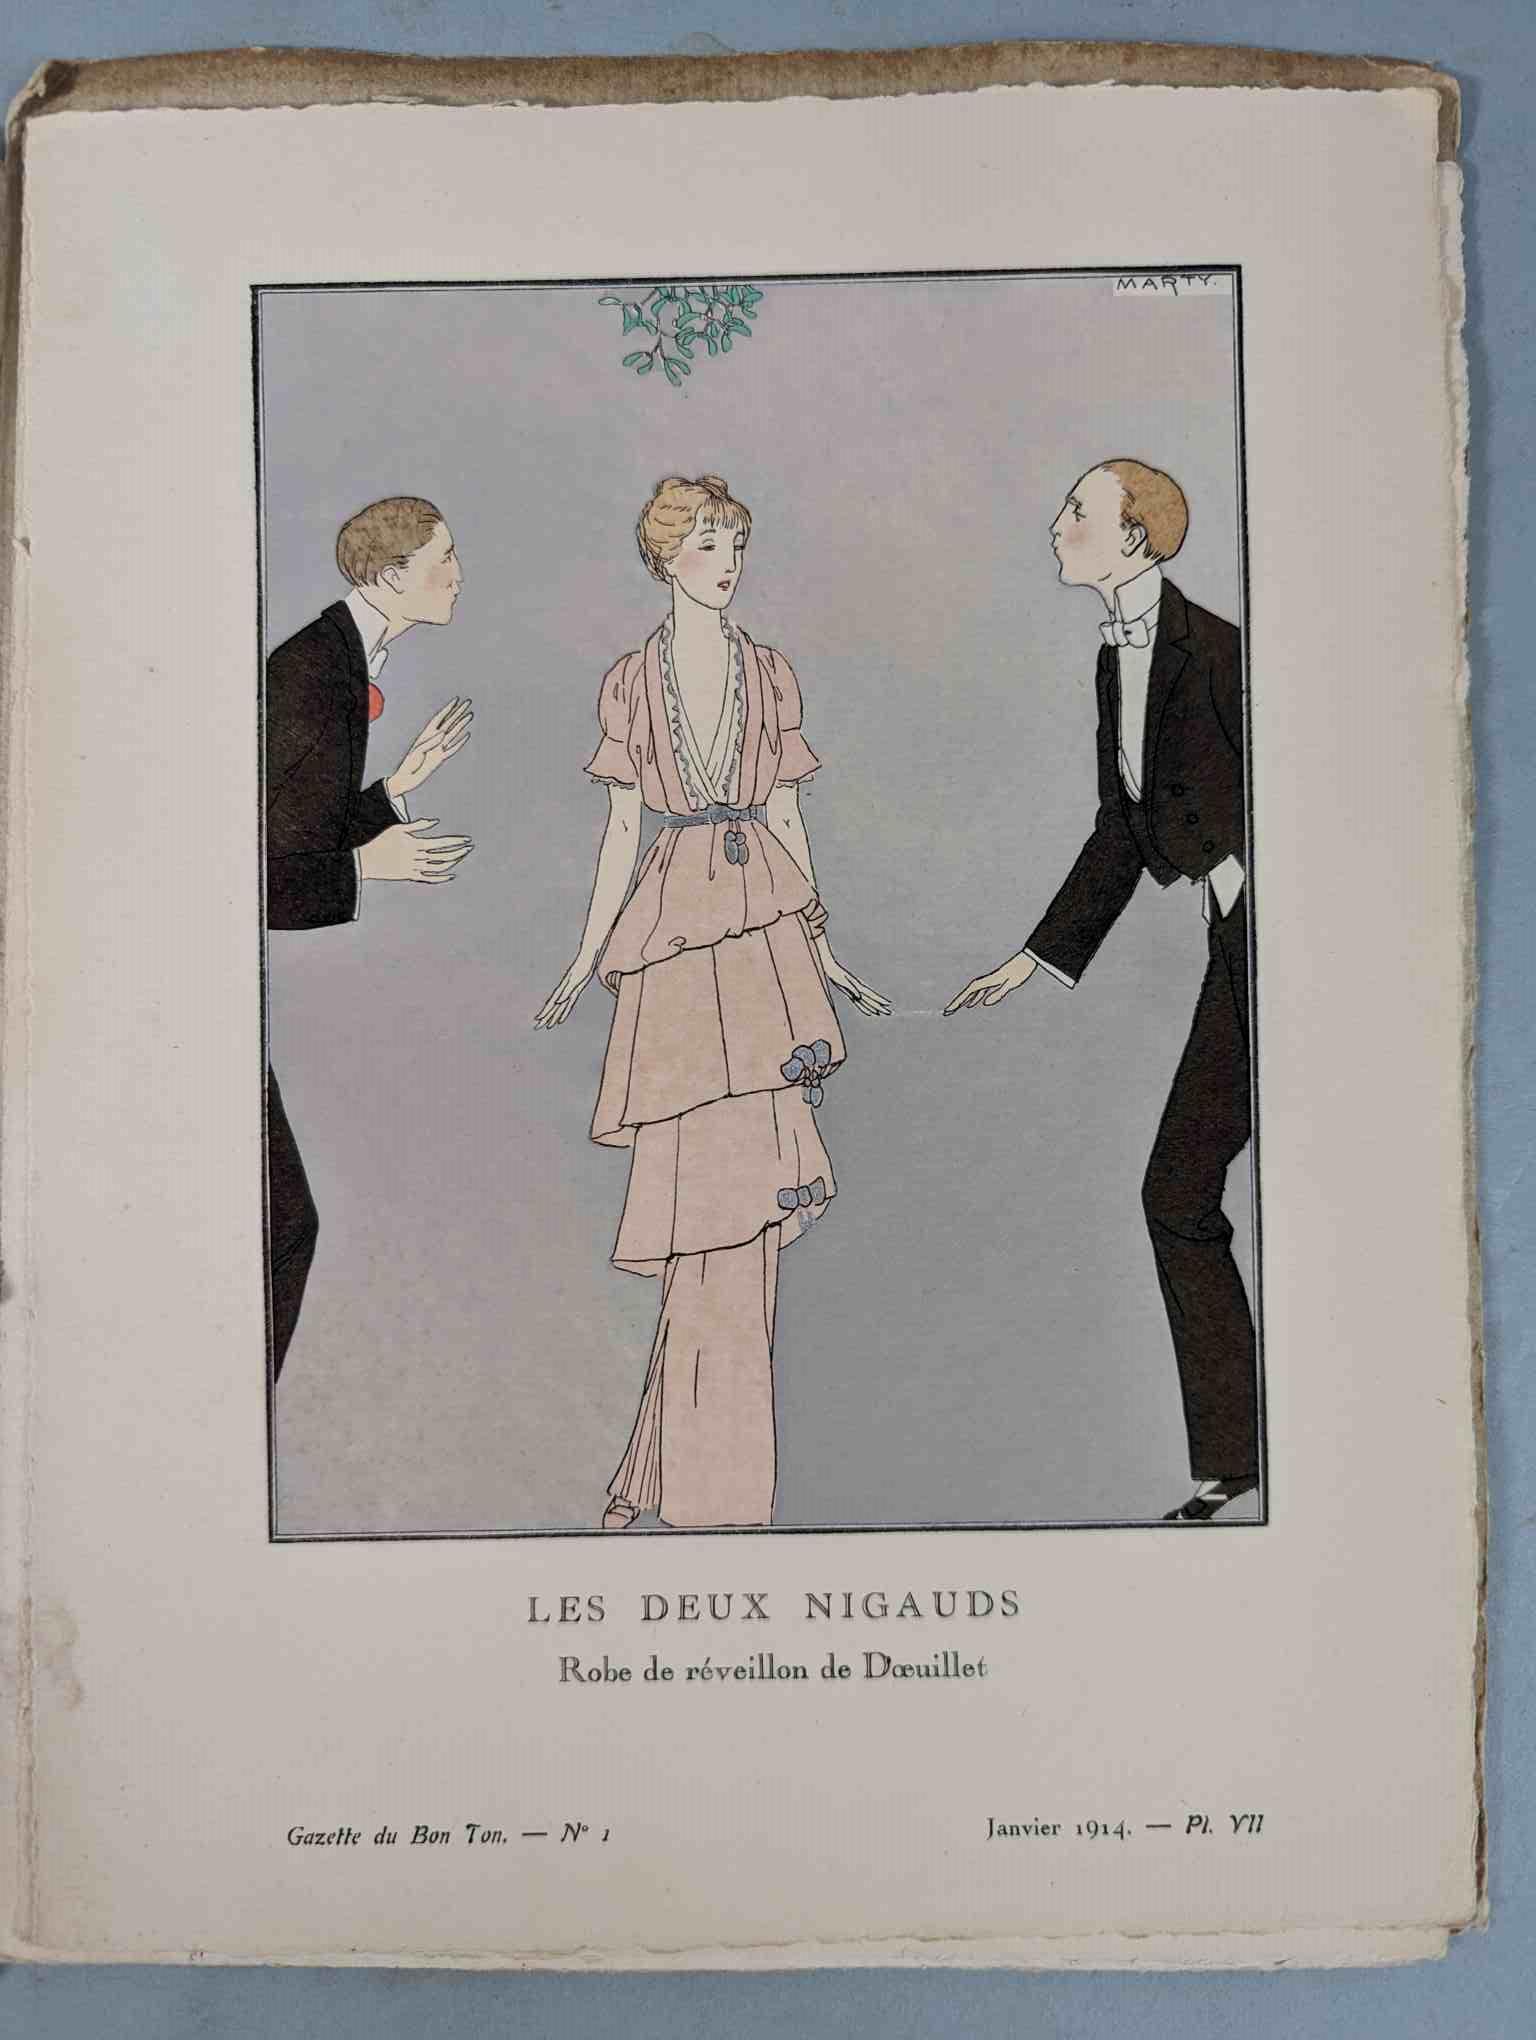 FASHION. VOGEL, Lucien. GAZETTE DU BON TON: Art-Modes & Frivolités, Paris 1913-14, 4 vol. - Image 17 of 54